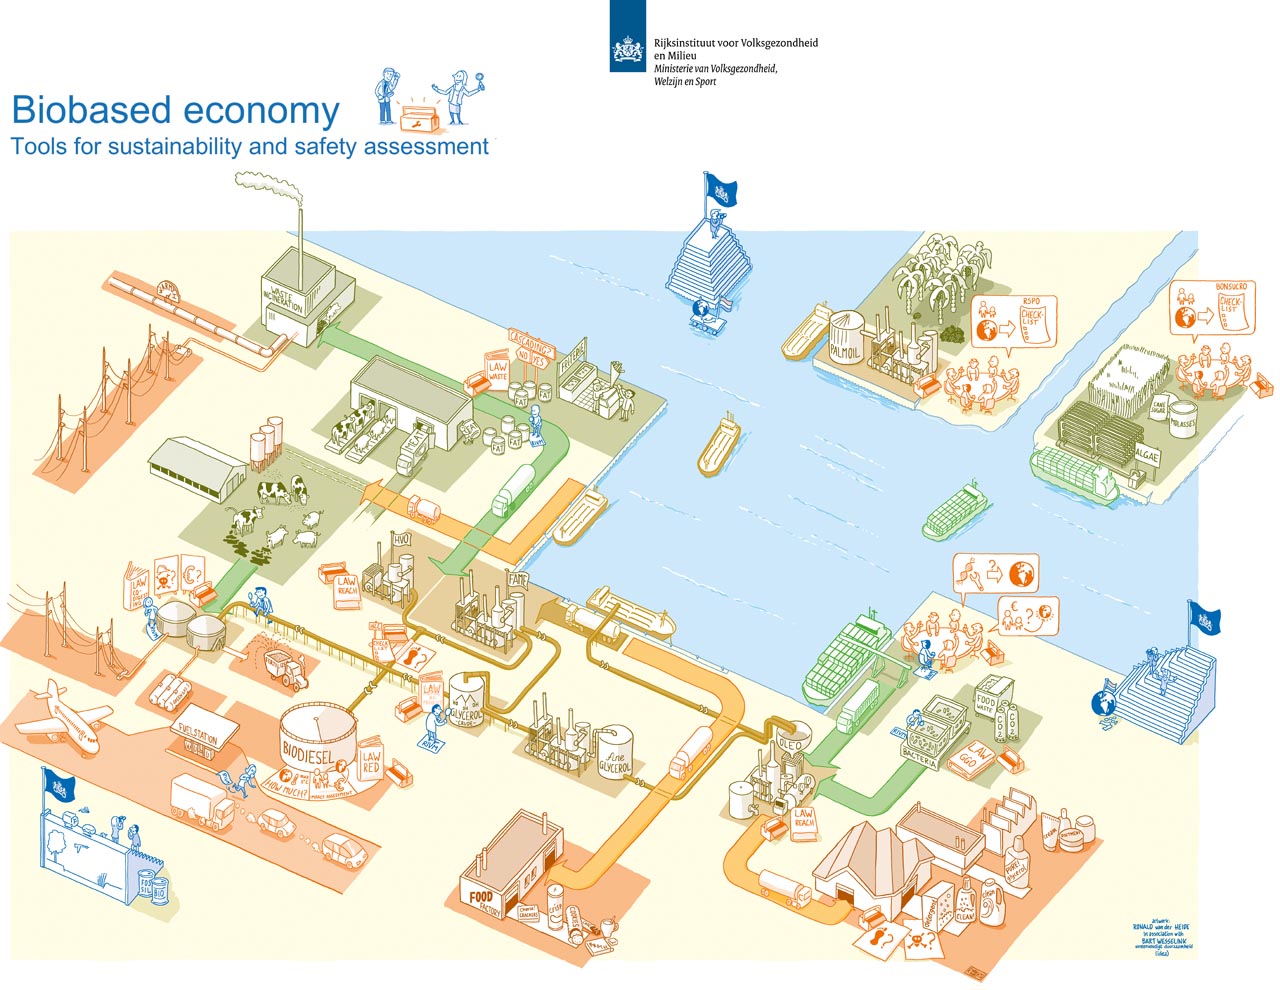 infographicsbiobased economy onderzoeksrapport RIVM. Ronald van der Heide is tekenaar, illustrator en maakt infographics op het vlak van duurzaamheid, circular economy (circulaire economie) en biobased economy 